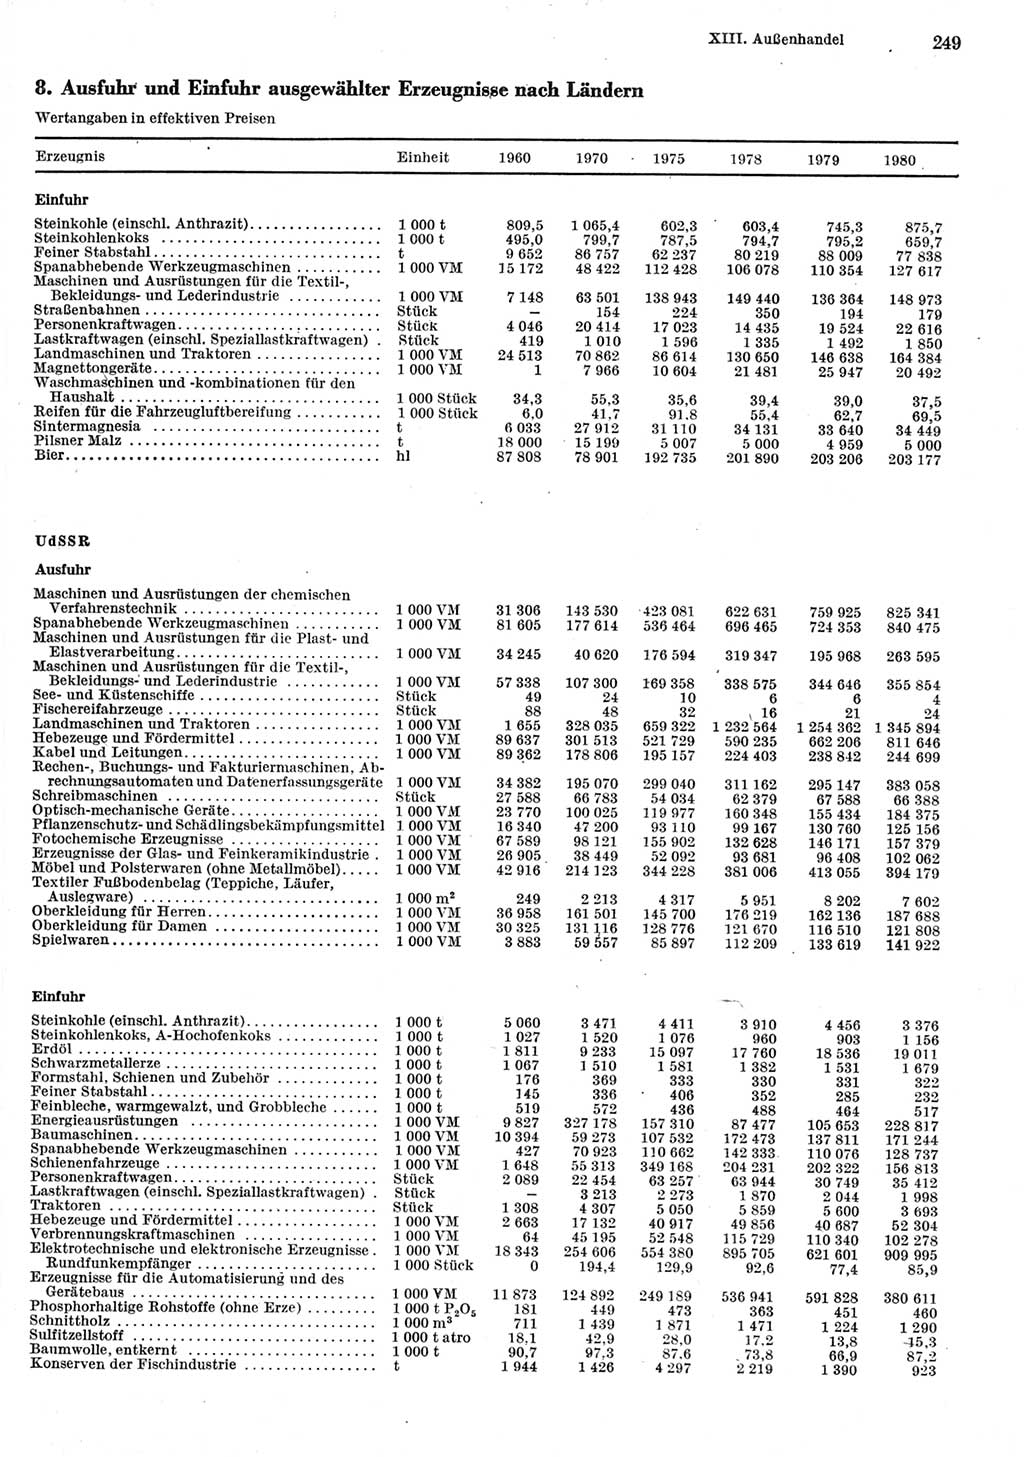 Statistisches Jahrbuch der Deutschen Demokratischen Republik (DDR) 1981, Seite 249 (Stat. Jb. DDR 1981, S. 249)